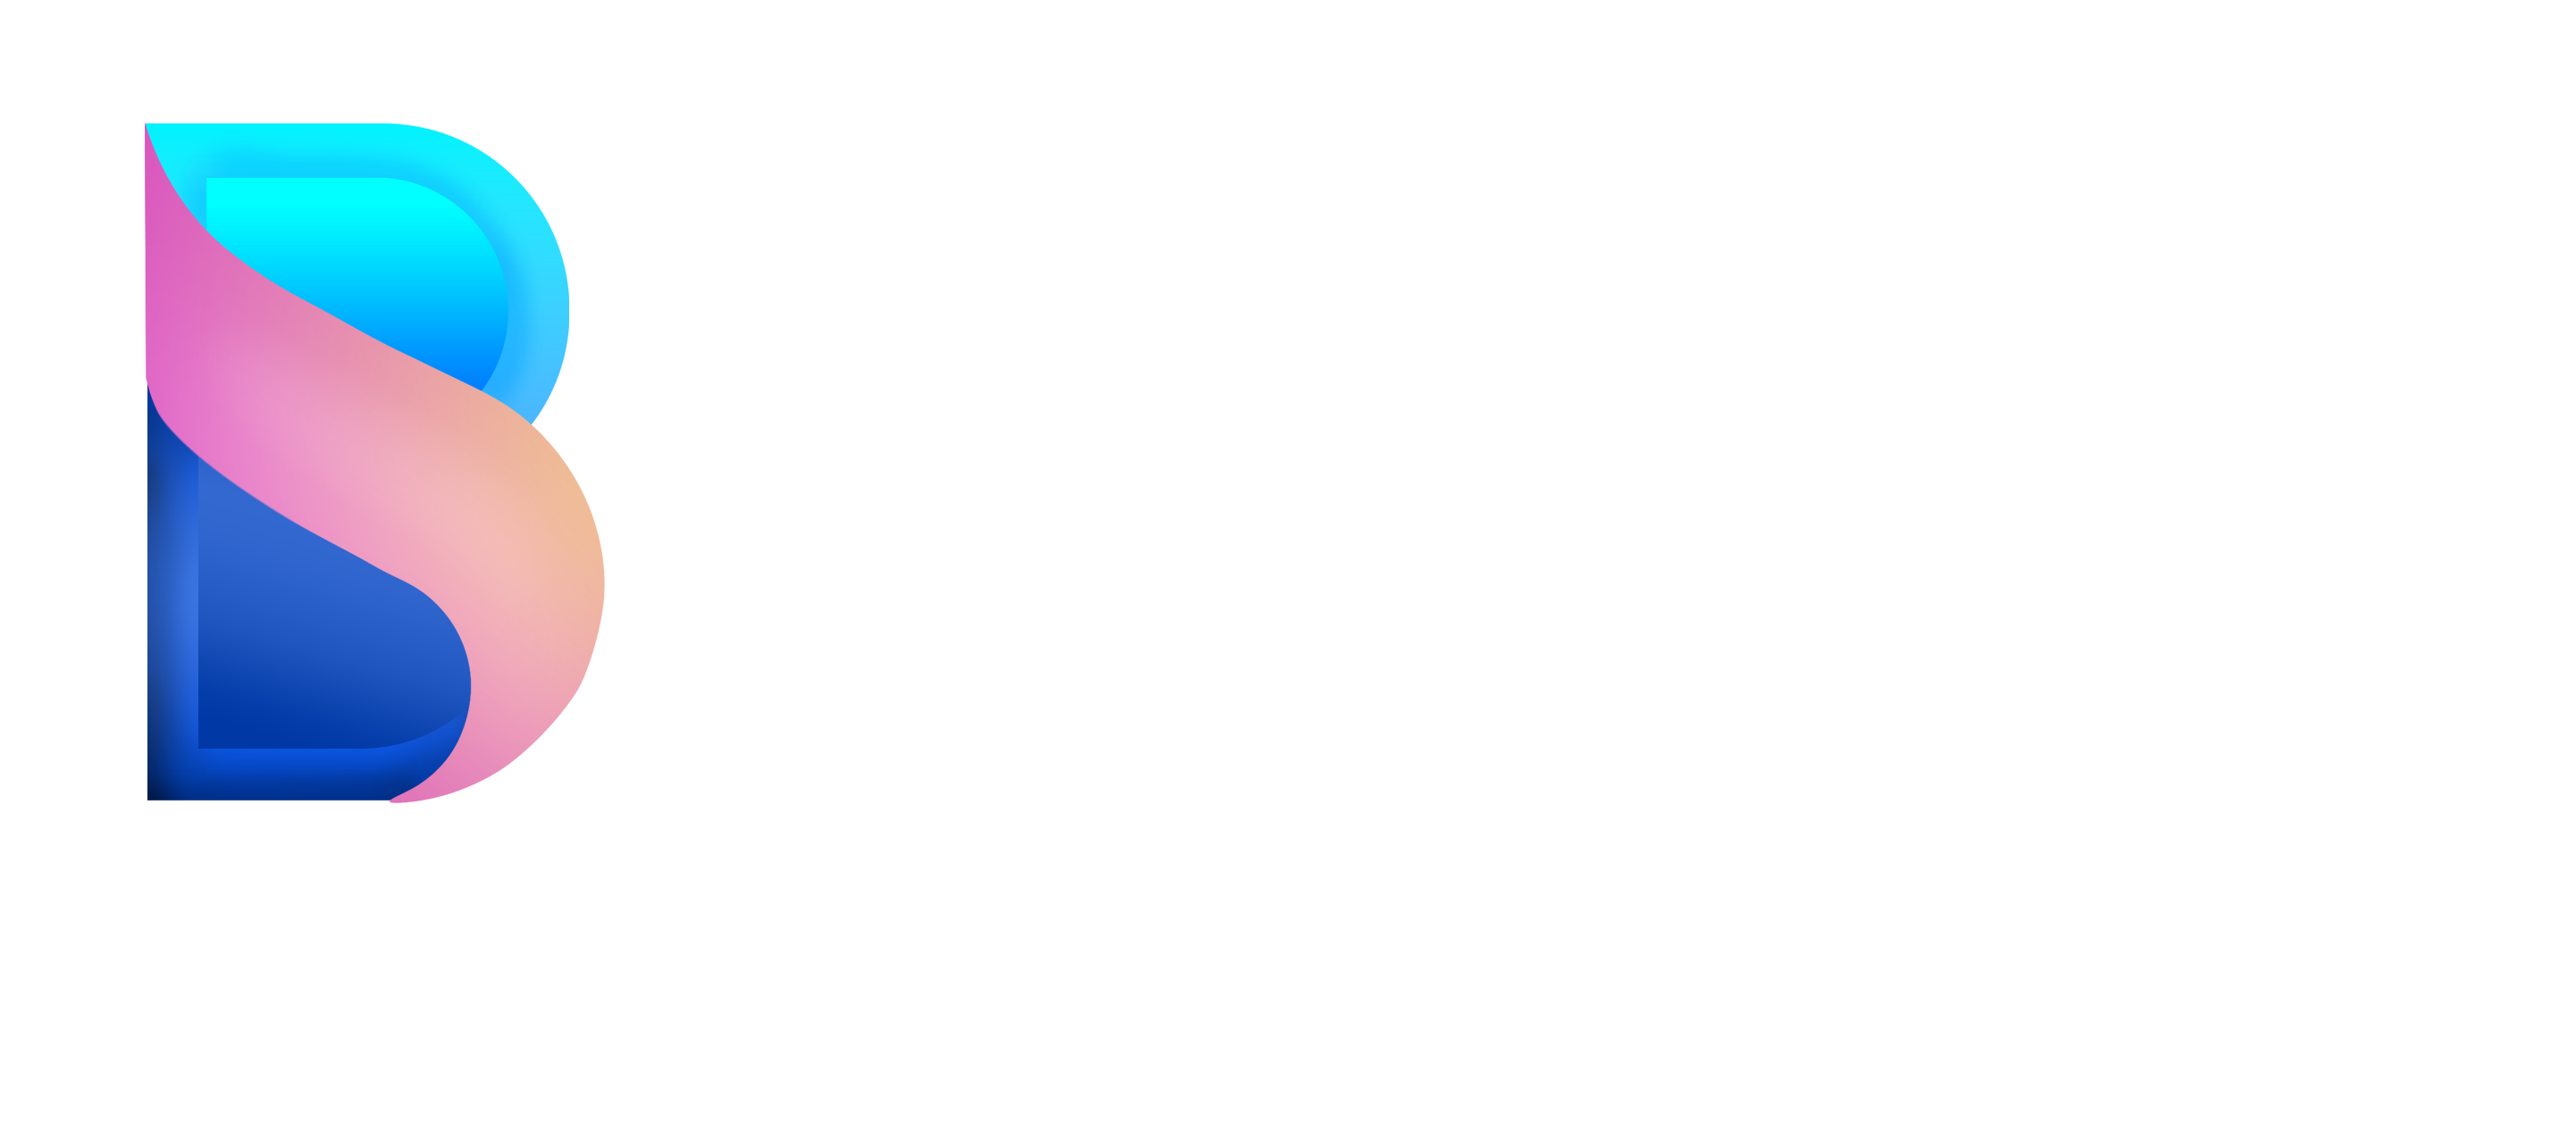 bristu logo white